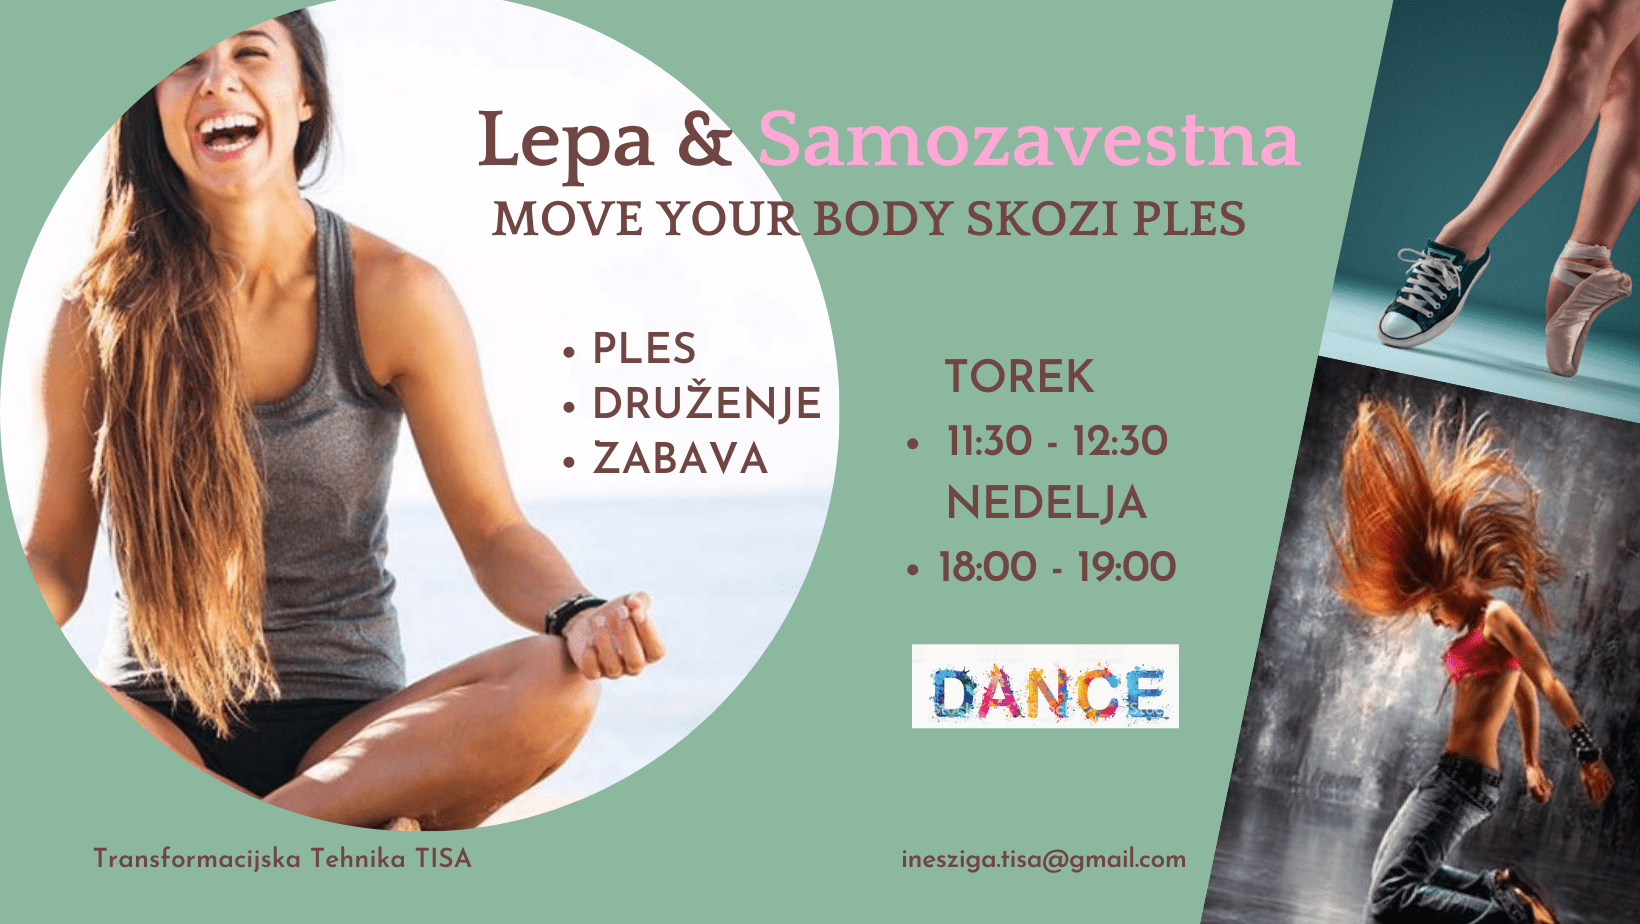 Lepa & Samozavestna / Move your Body skozi ples 7